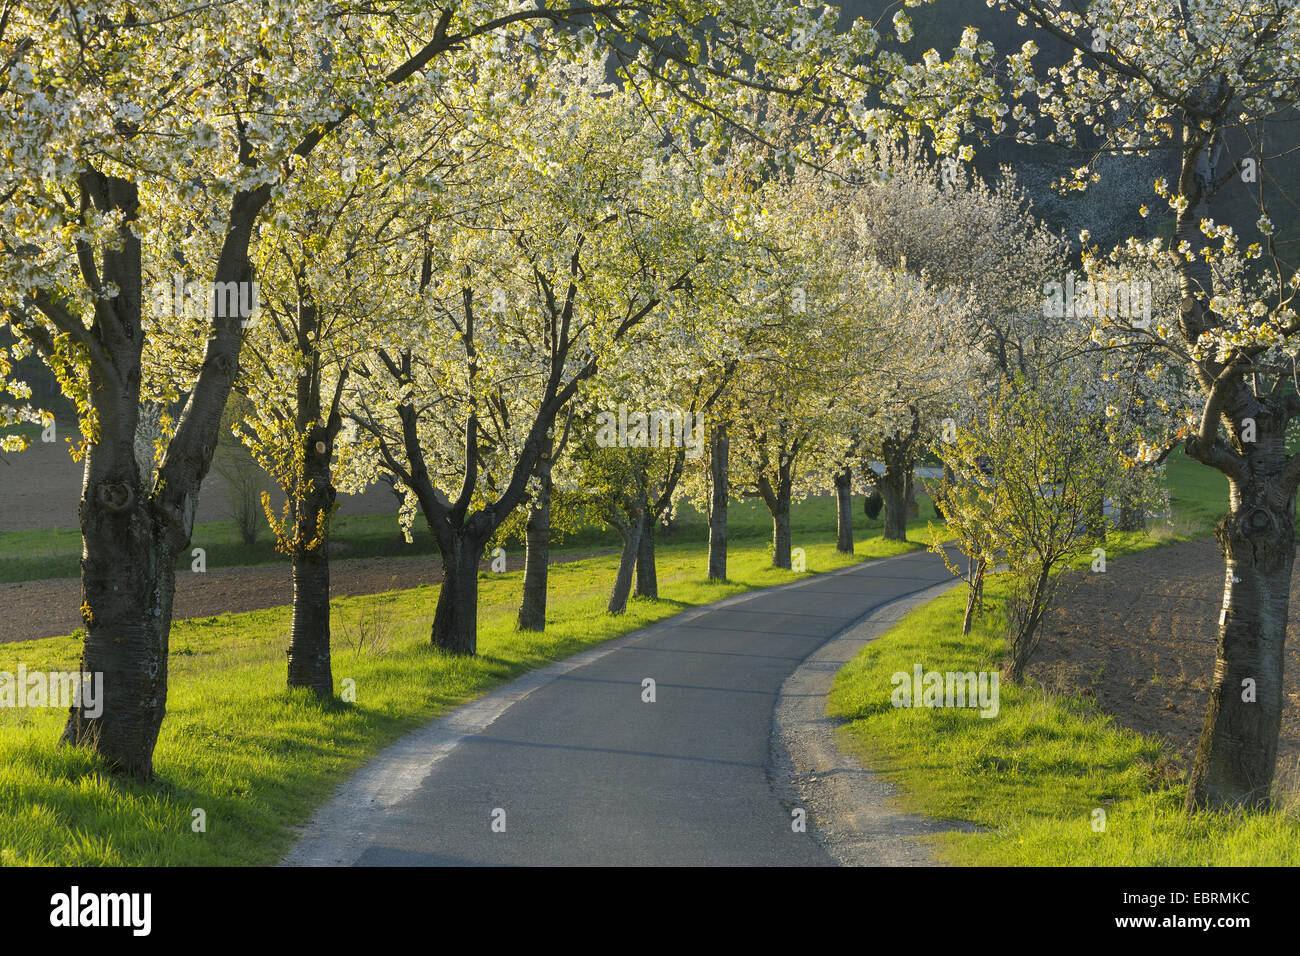 Cherry tree, Sweet cherry (Prunus avium), path lined by blooming cherry trees, Germany, Bavaria Stock Photo